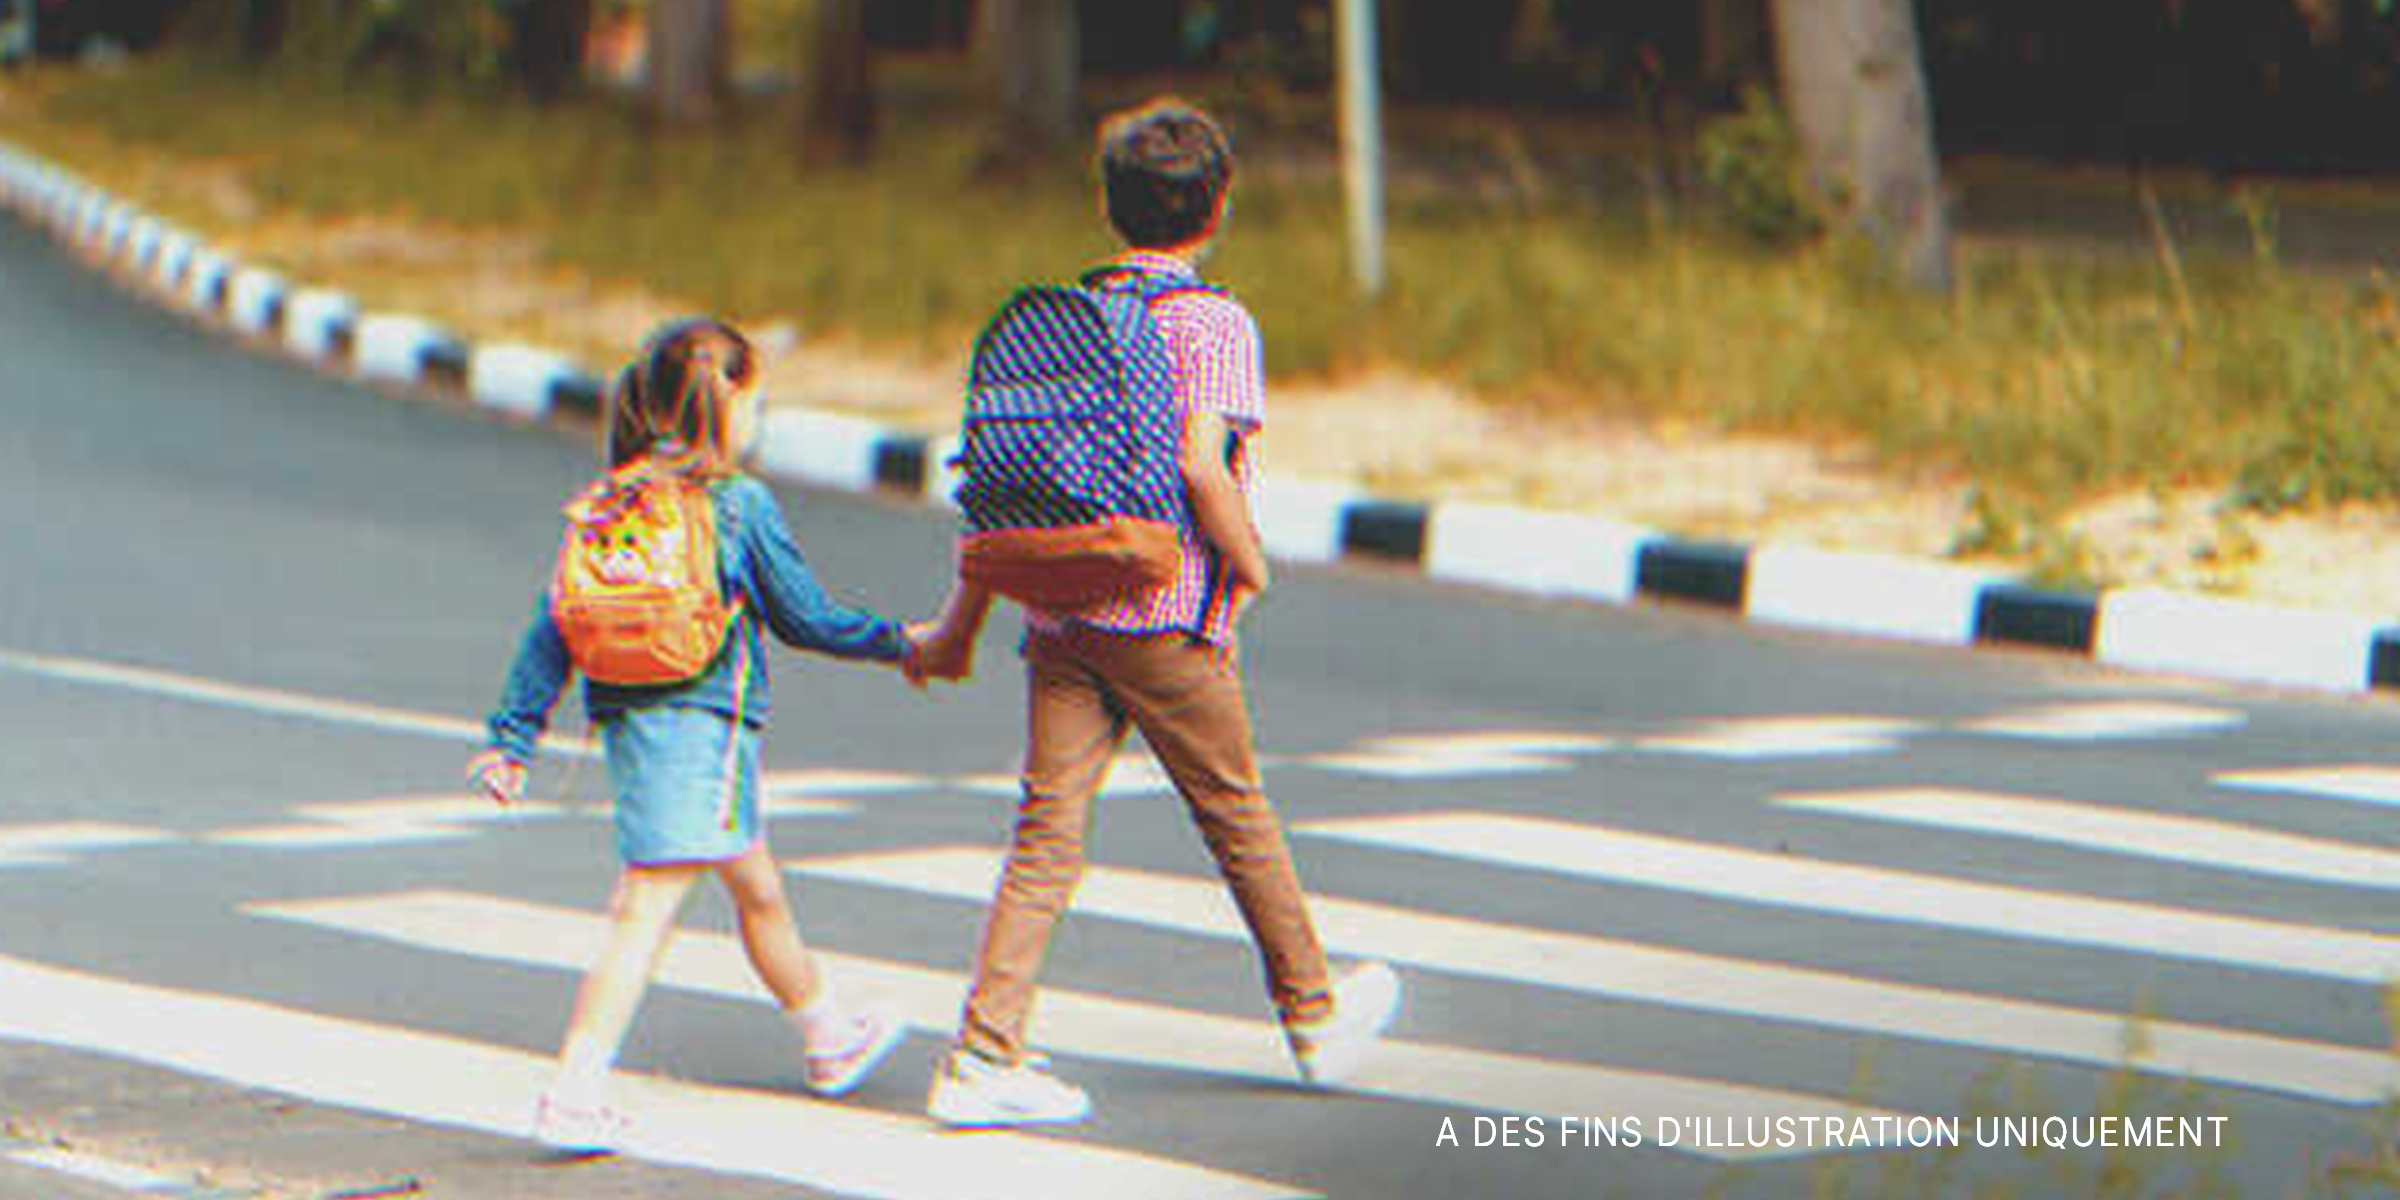 Un garçon marchant dans la rue en tenant la main d'une petite fille | Source : Shutterstock